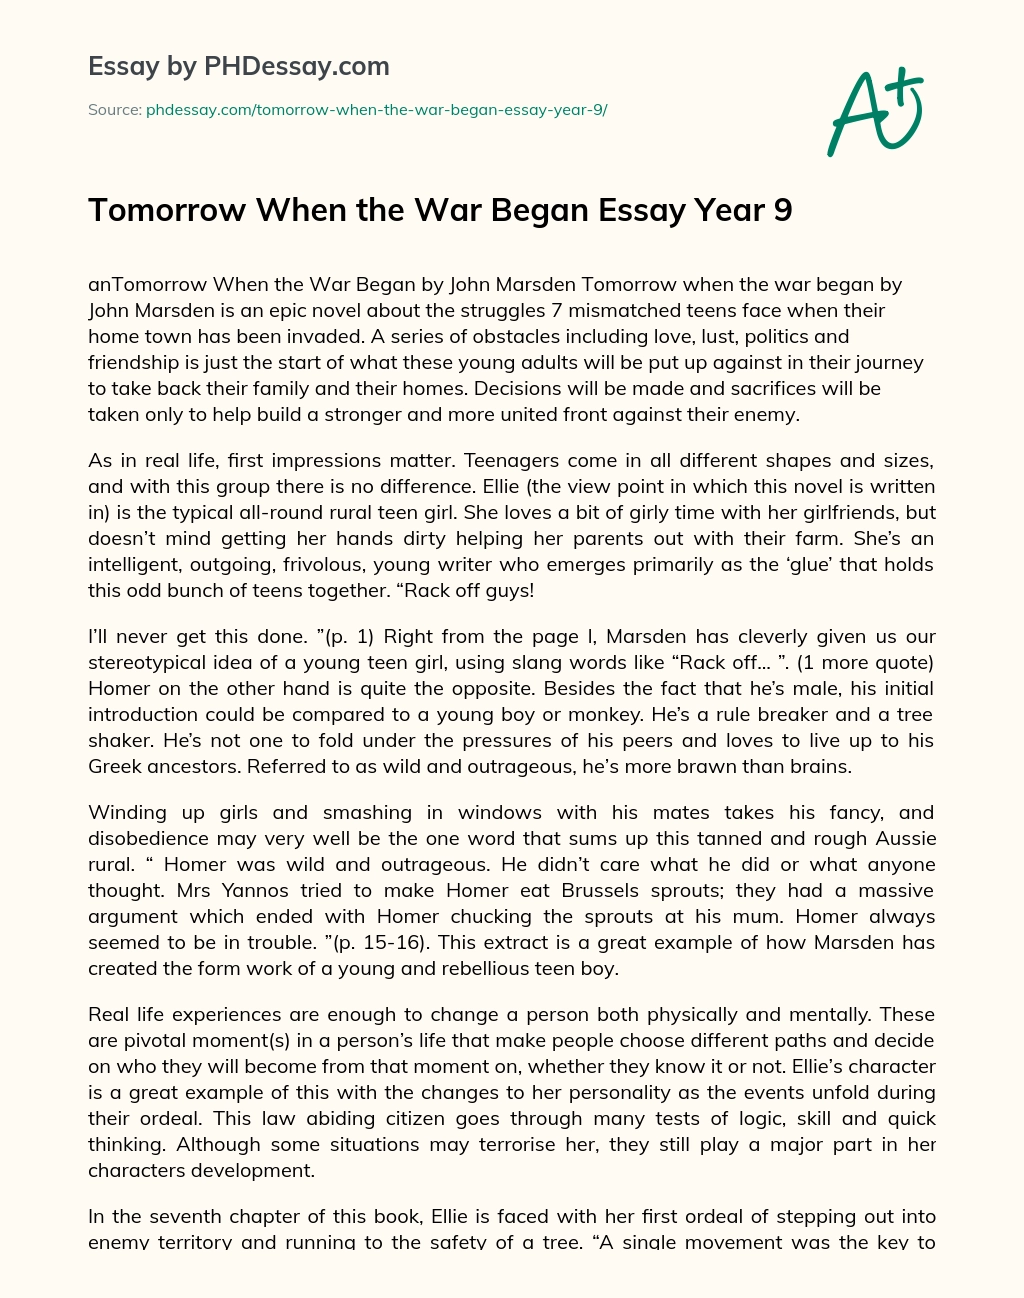 Tomorrow When the War Began Essay Year 9 essay